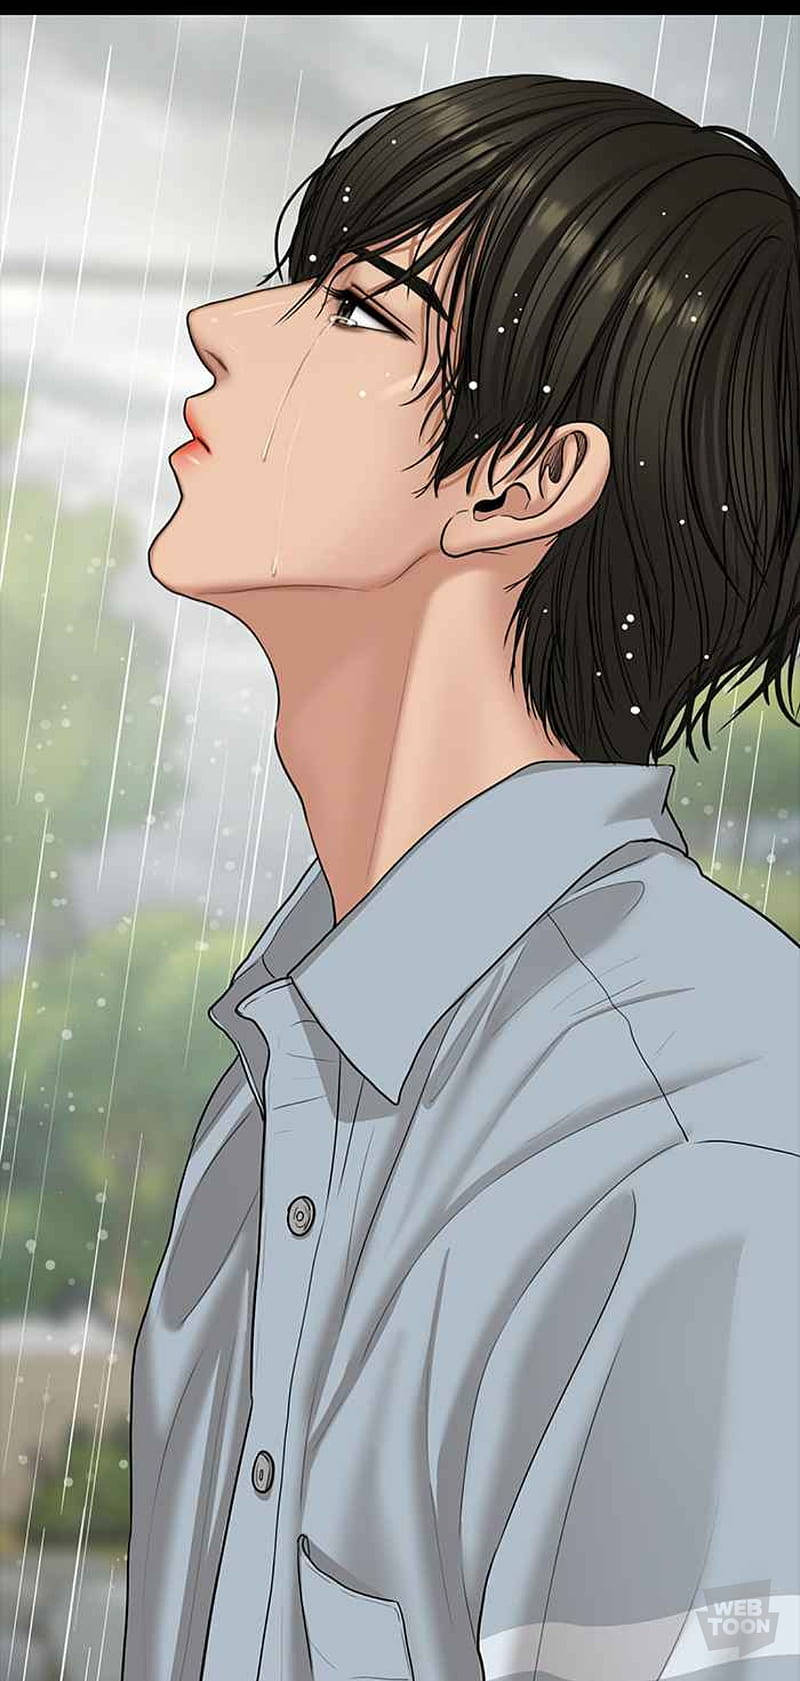 100+] Sad Boy Anime Wallpapers